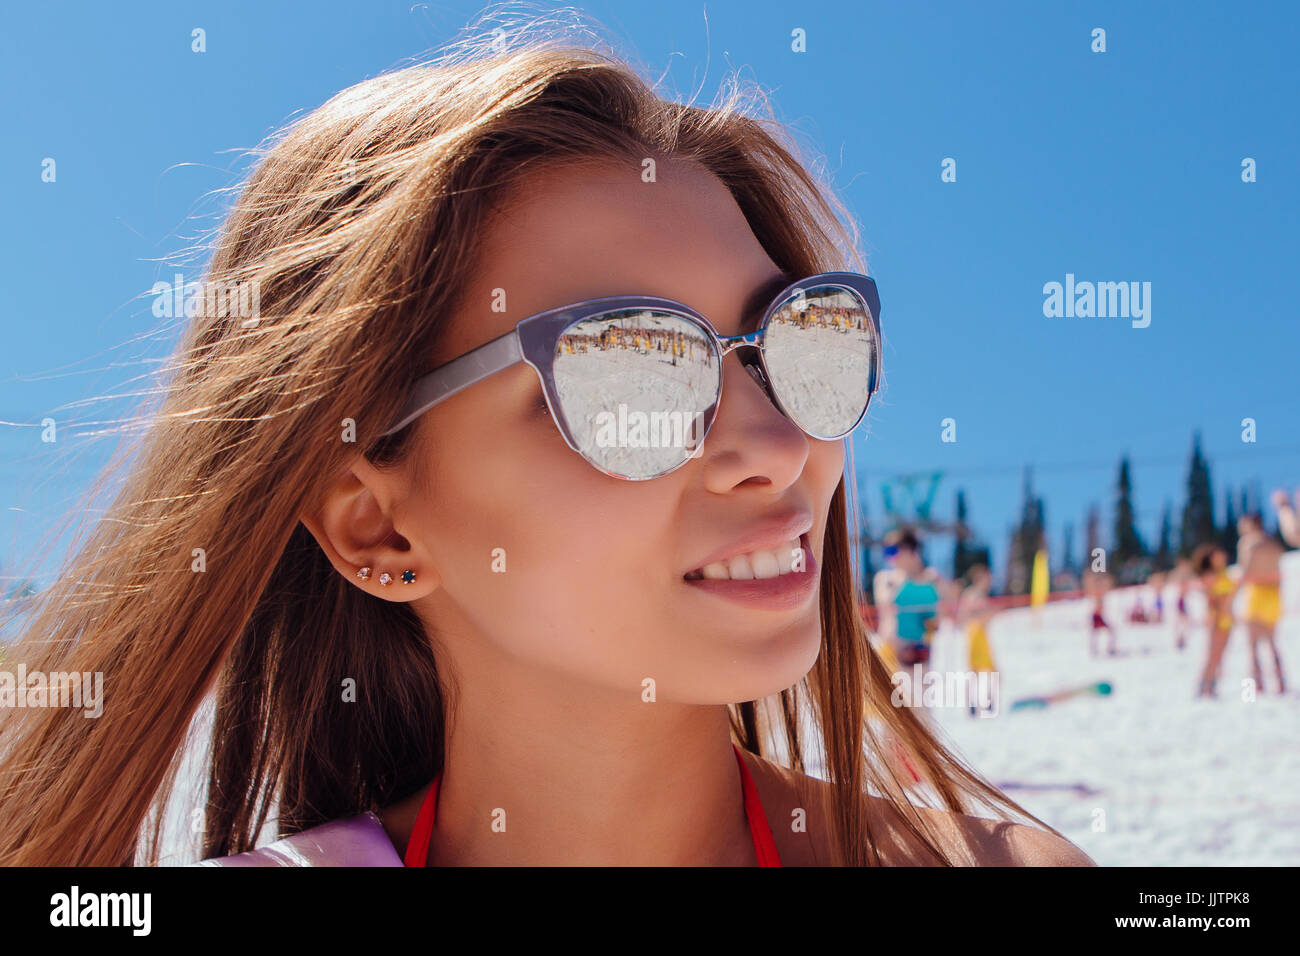 Beautiful girl in bikini with sunglasses Stock Photo